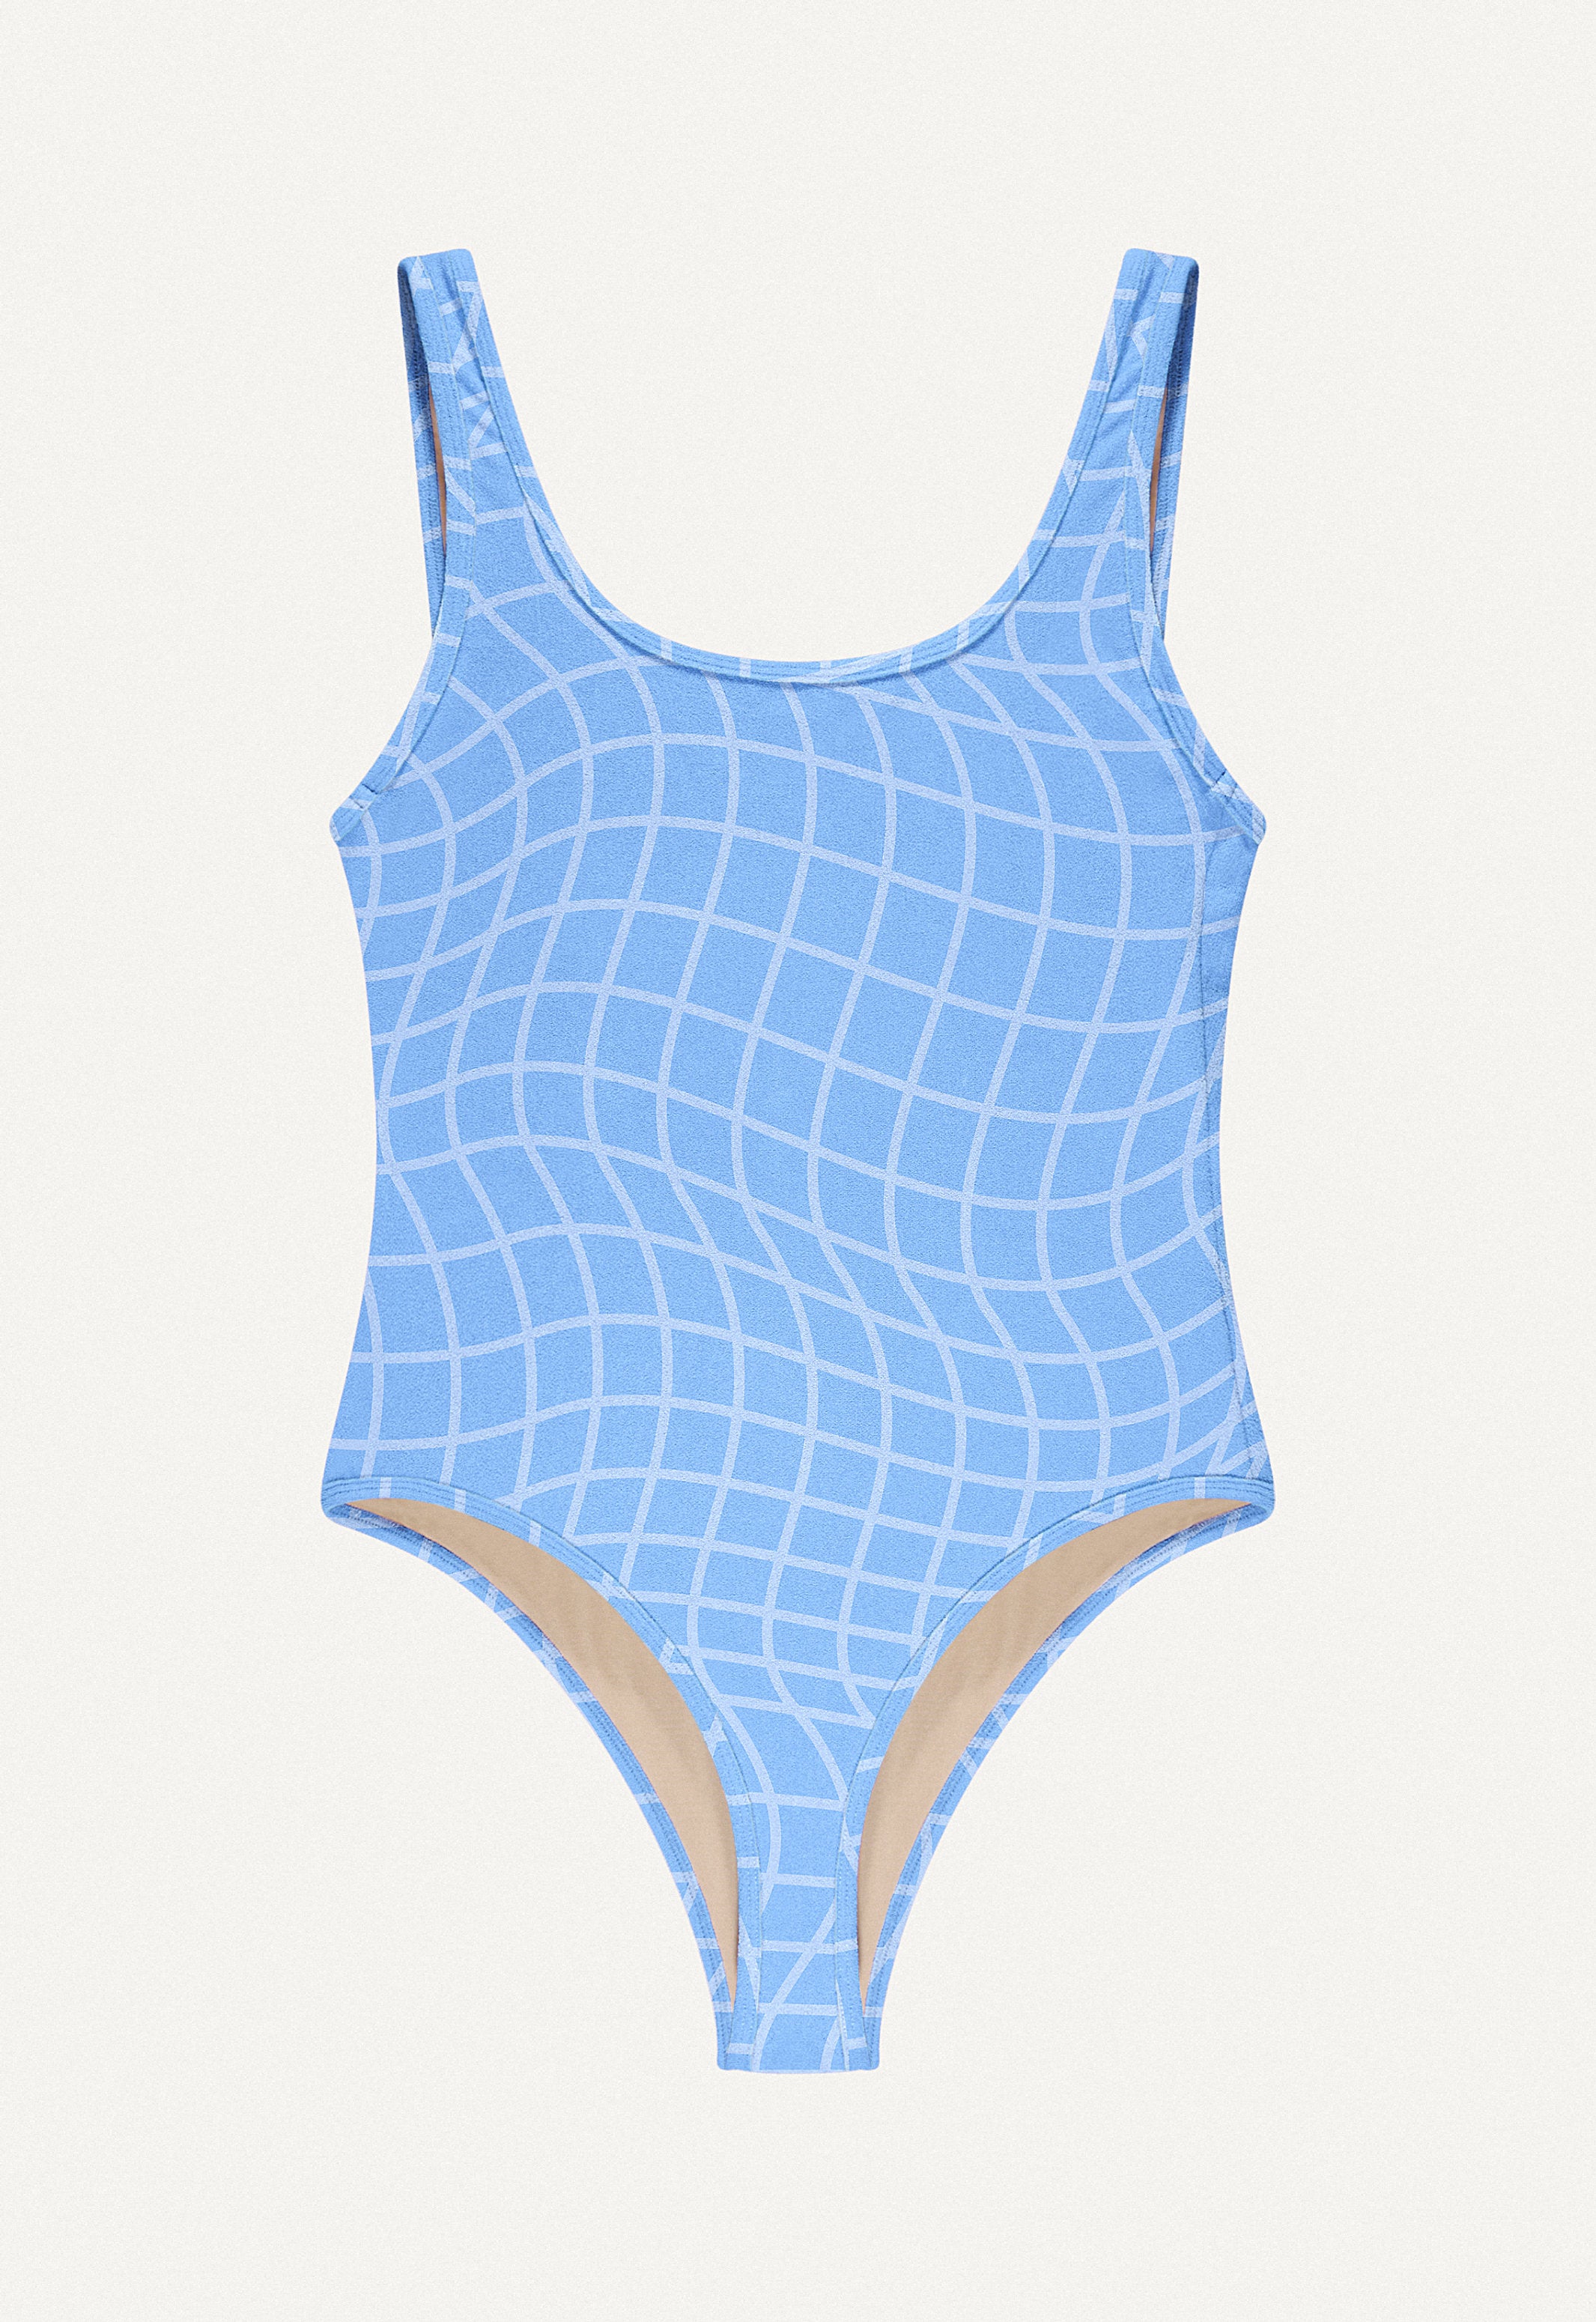 Badeanzug „Zephyr“ in Blue Pool Print Frottee